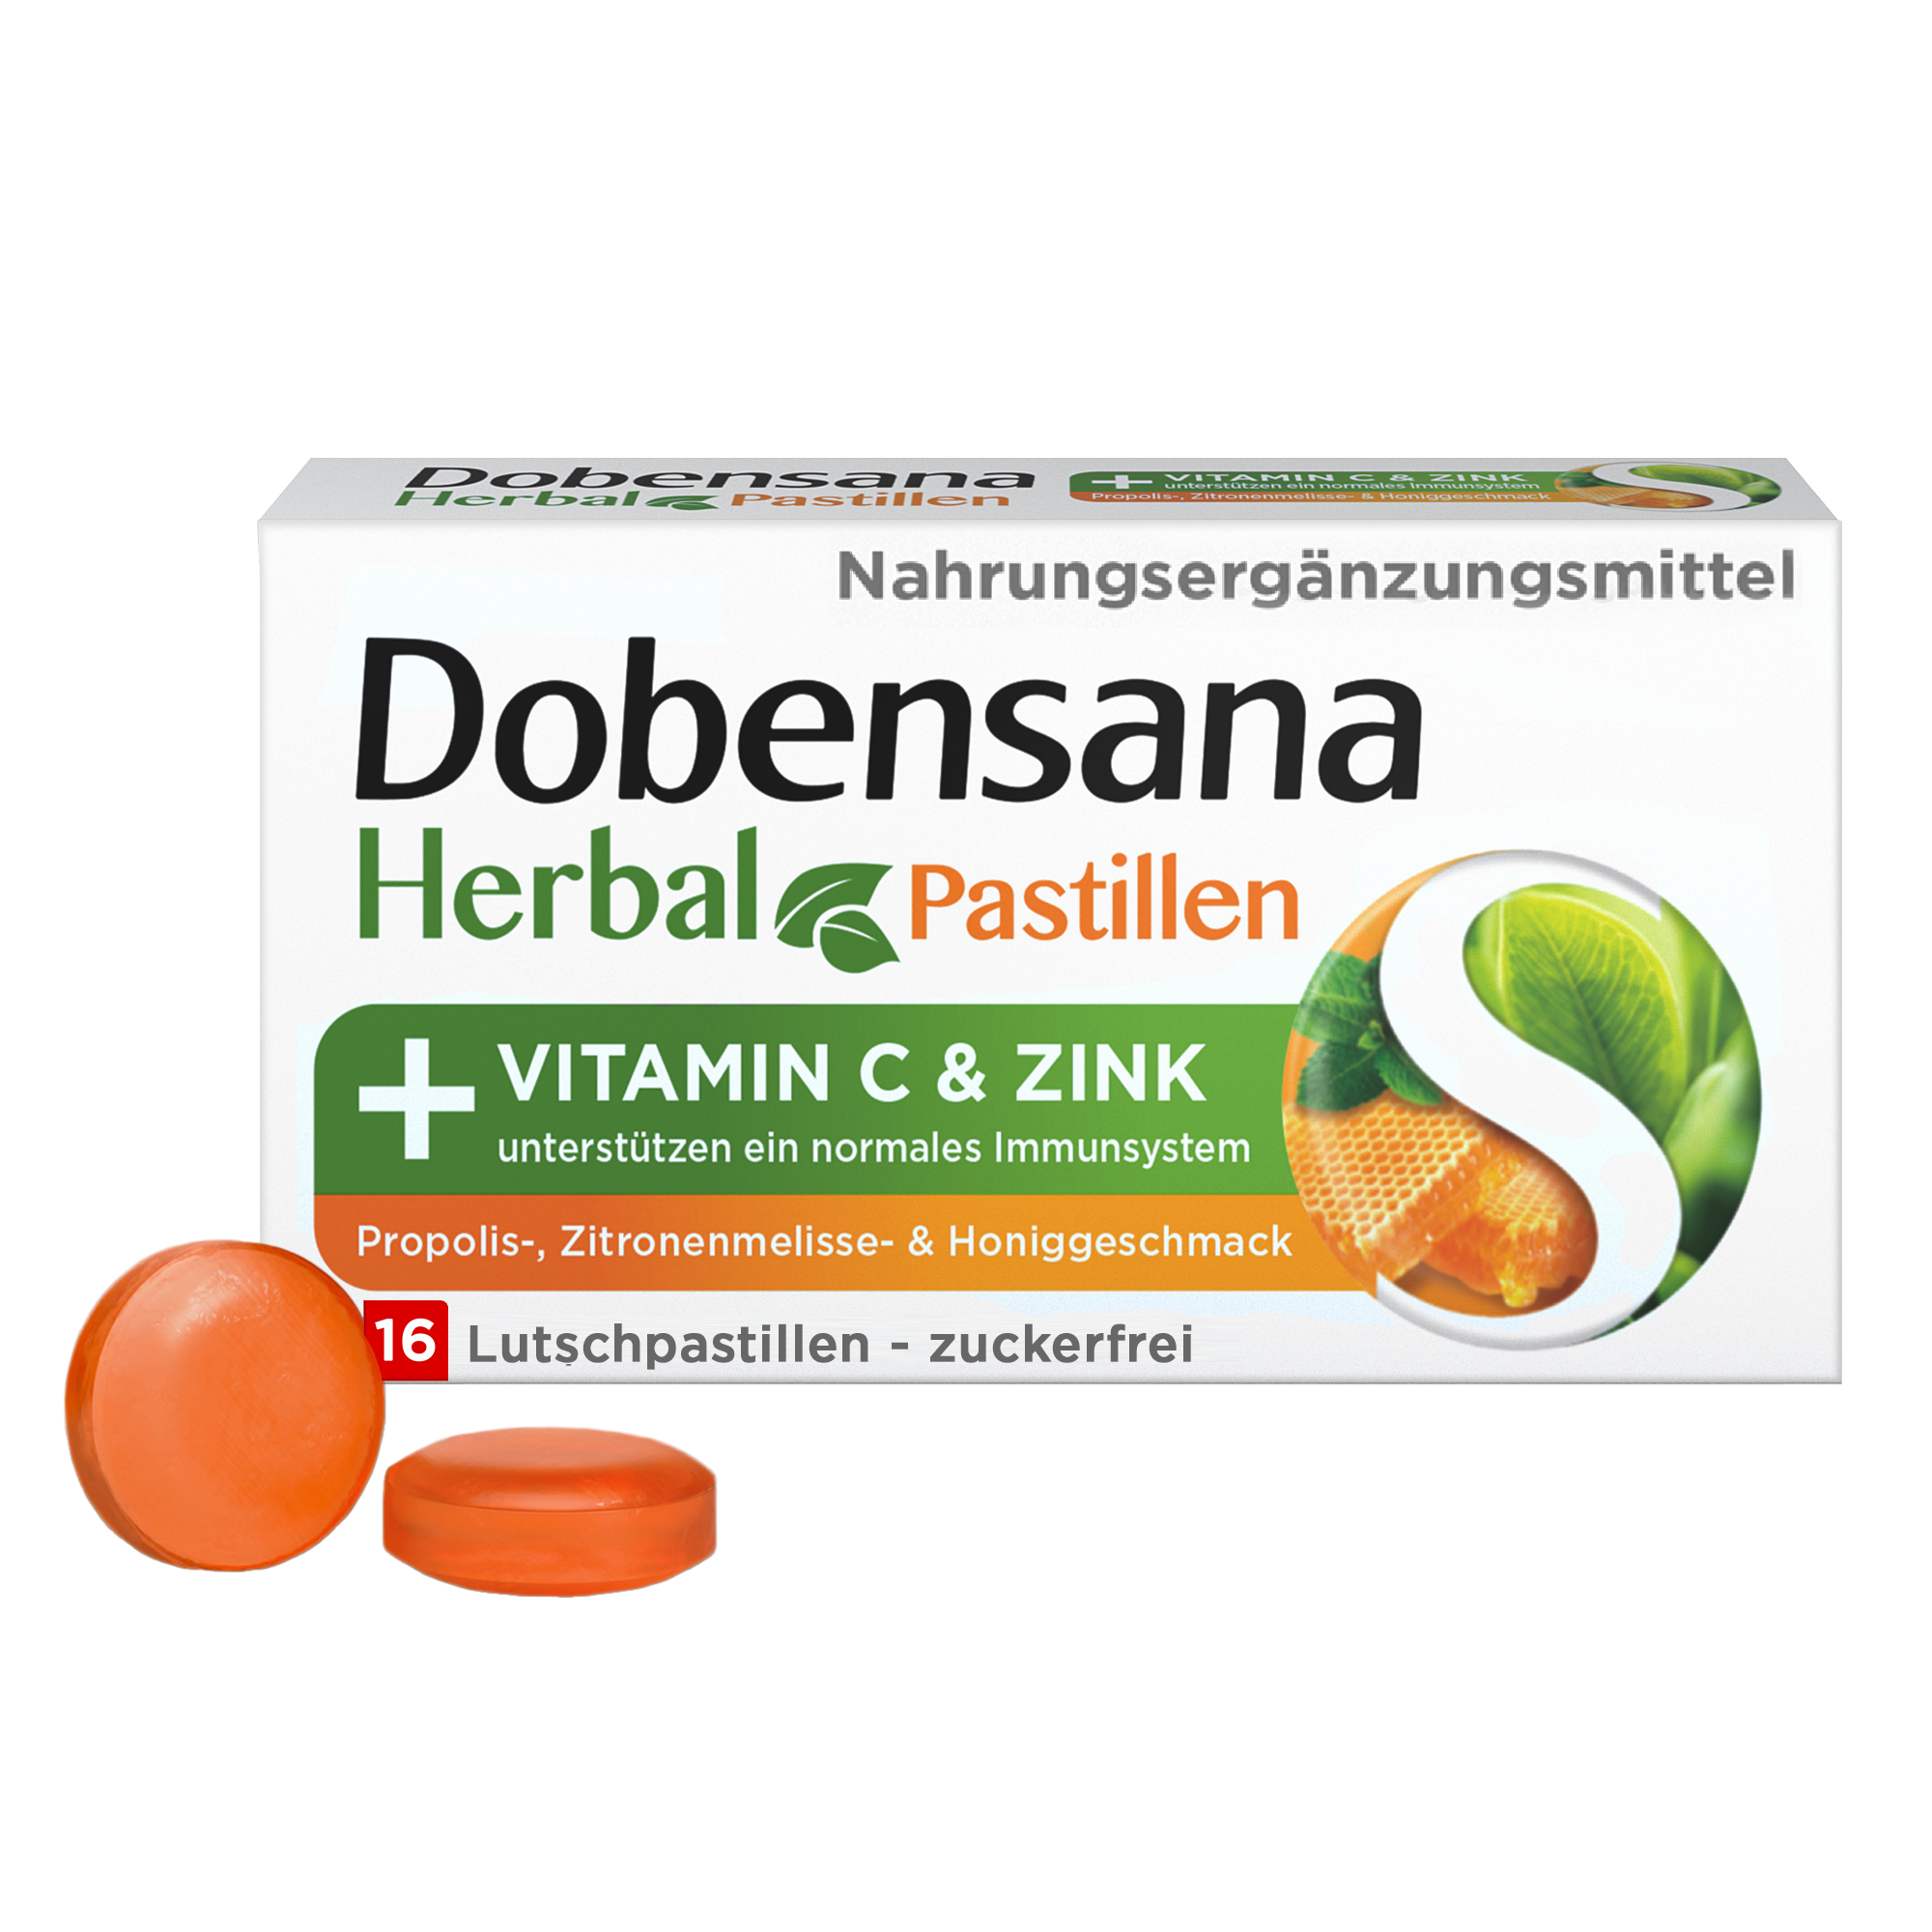 Dobensana Herbal Propolis, Zitronenmelisse & Honiggeschmack